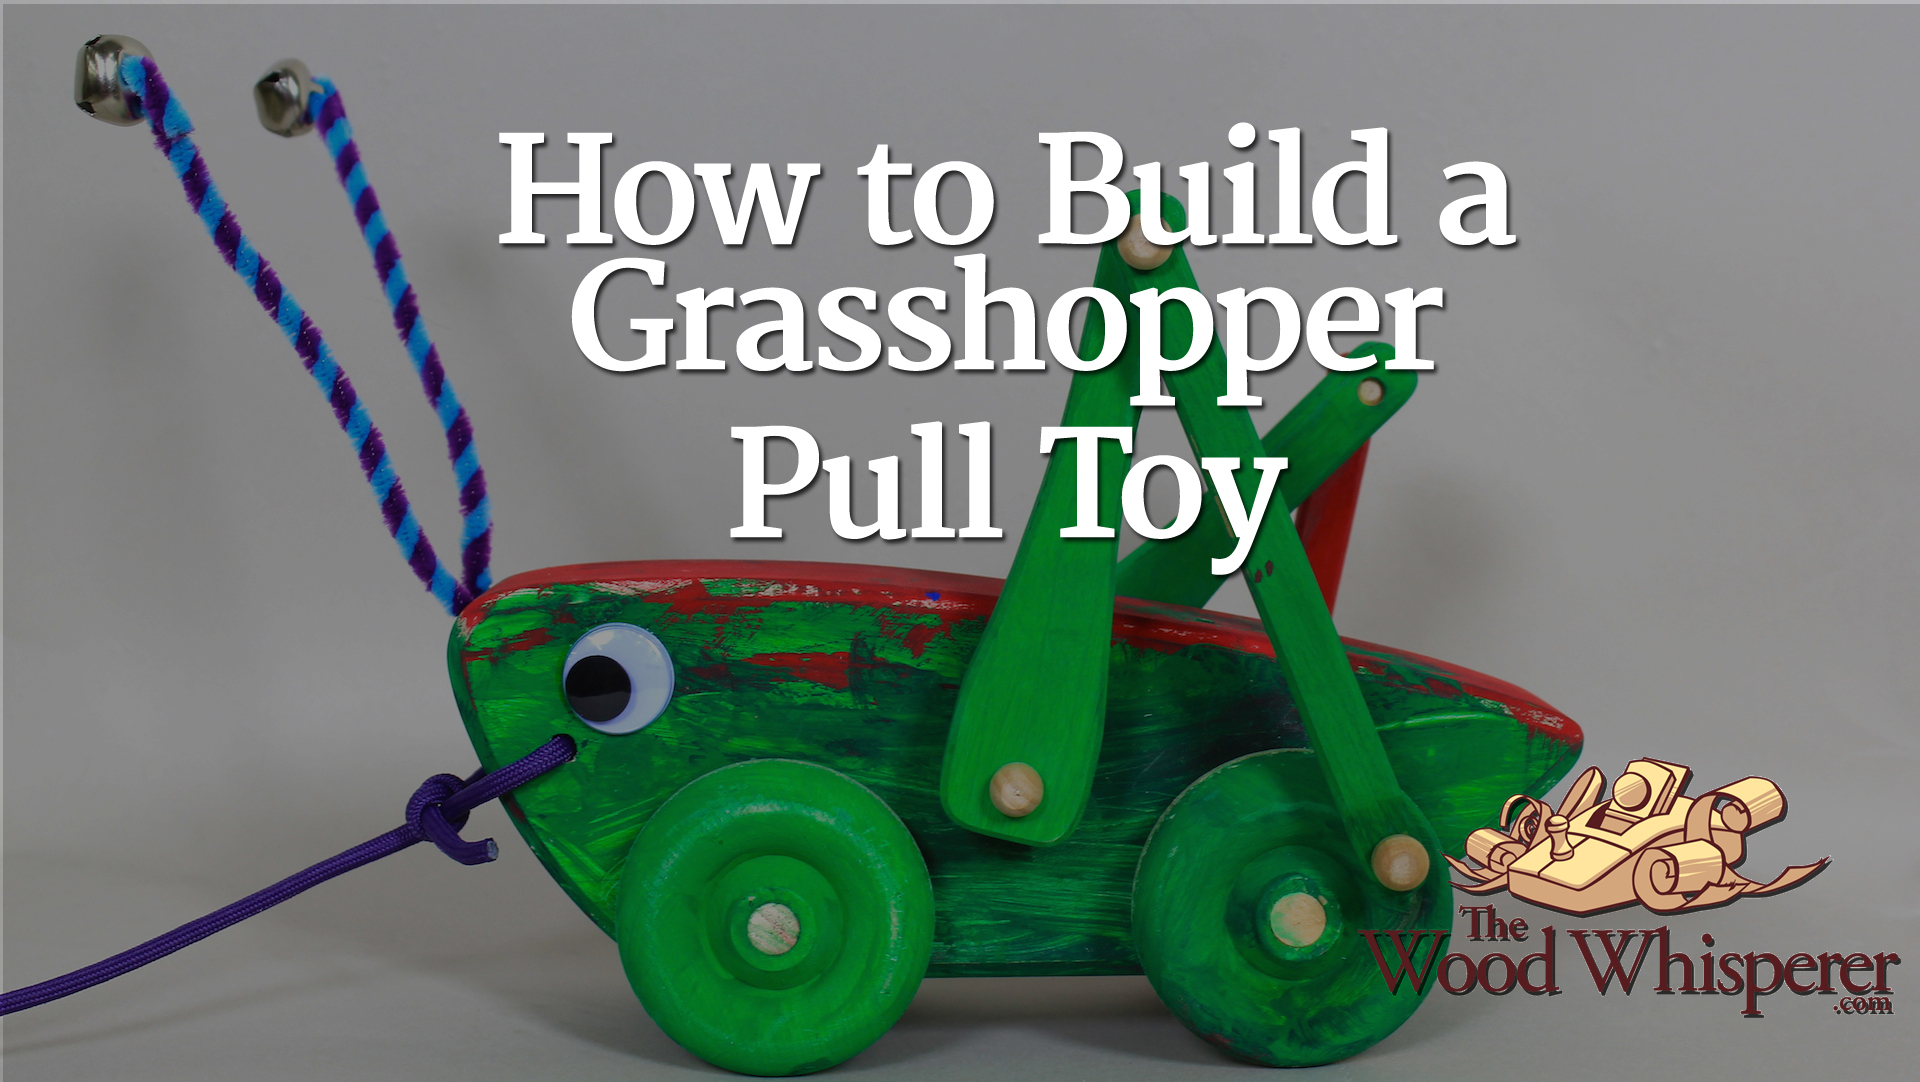 226 - Grasshopper Pull Toy - The Wood Whisperer